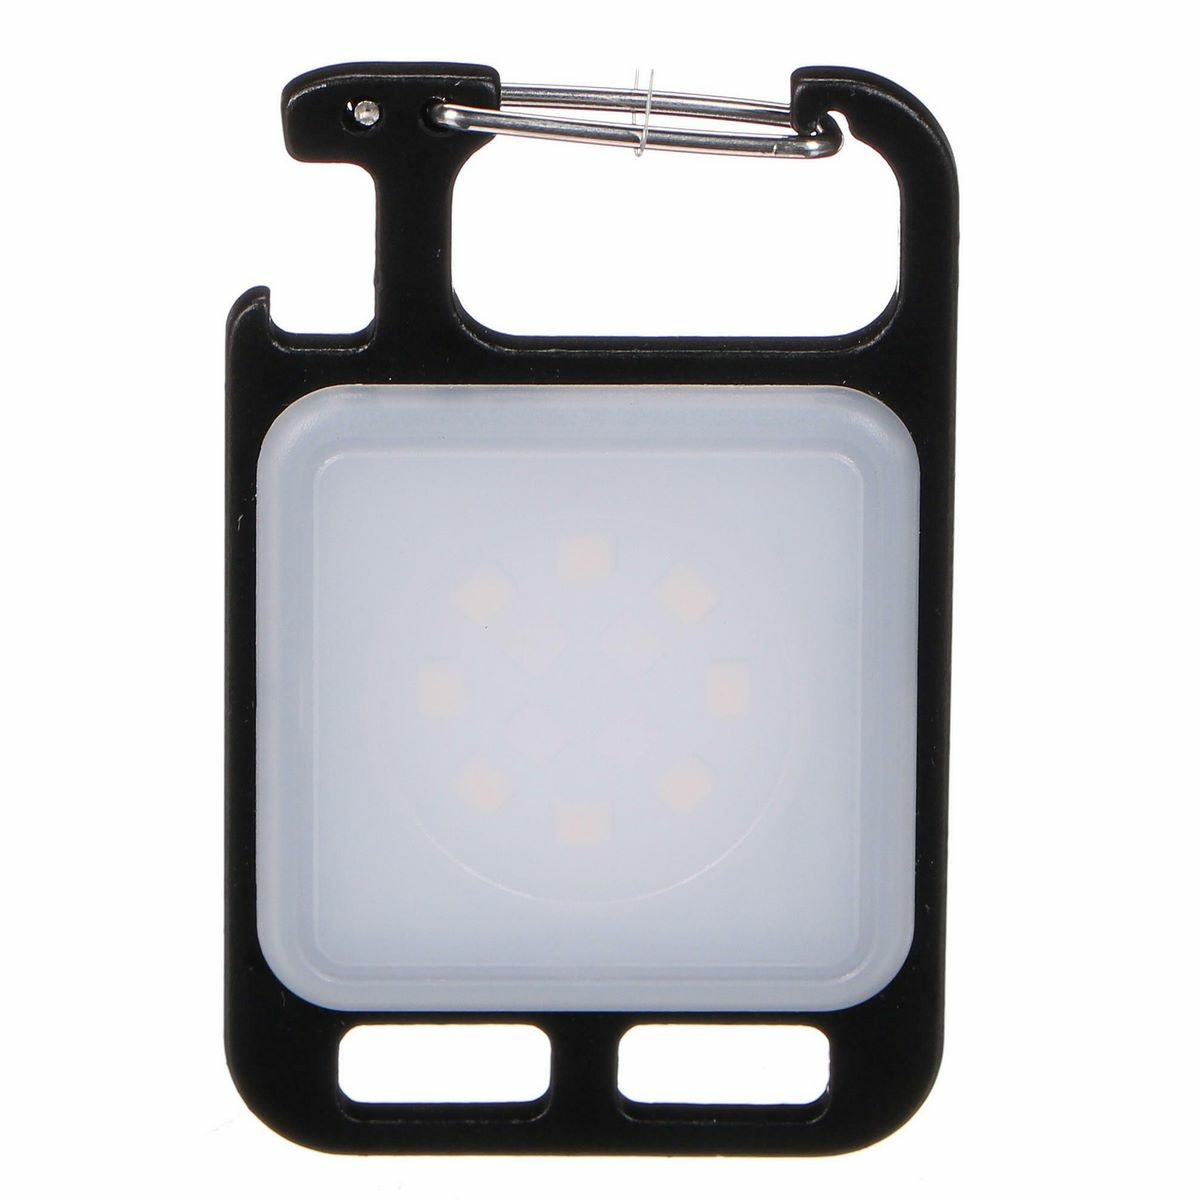 Sixtol Svítilna multifunkční na klíče s magnetem LAMP KEY 3, 300 lm, LED, USB